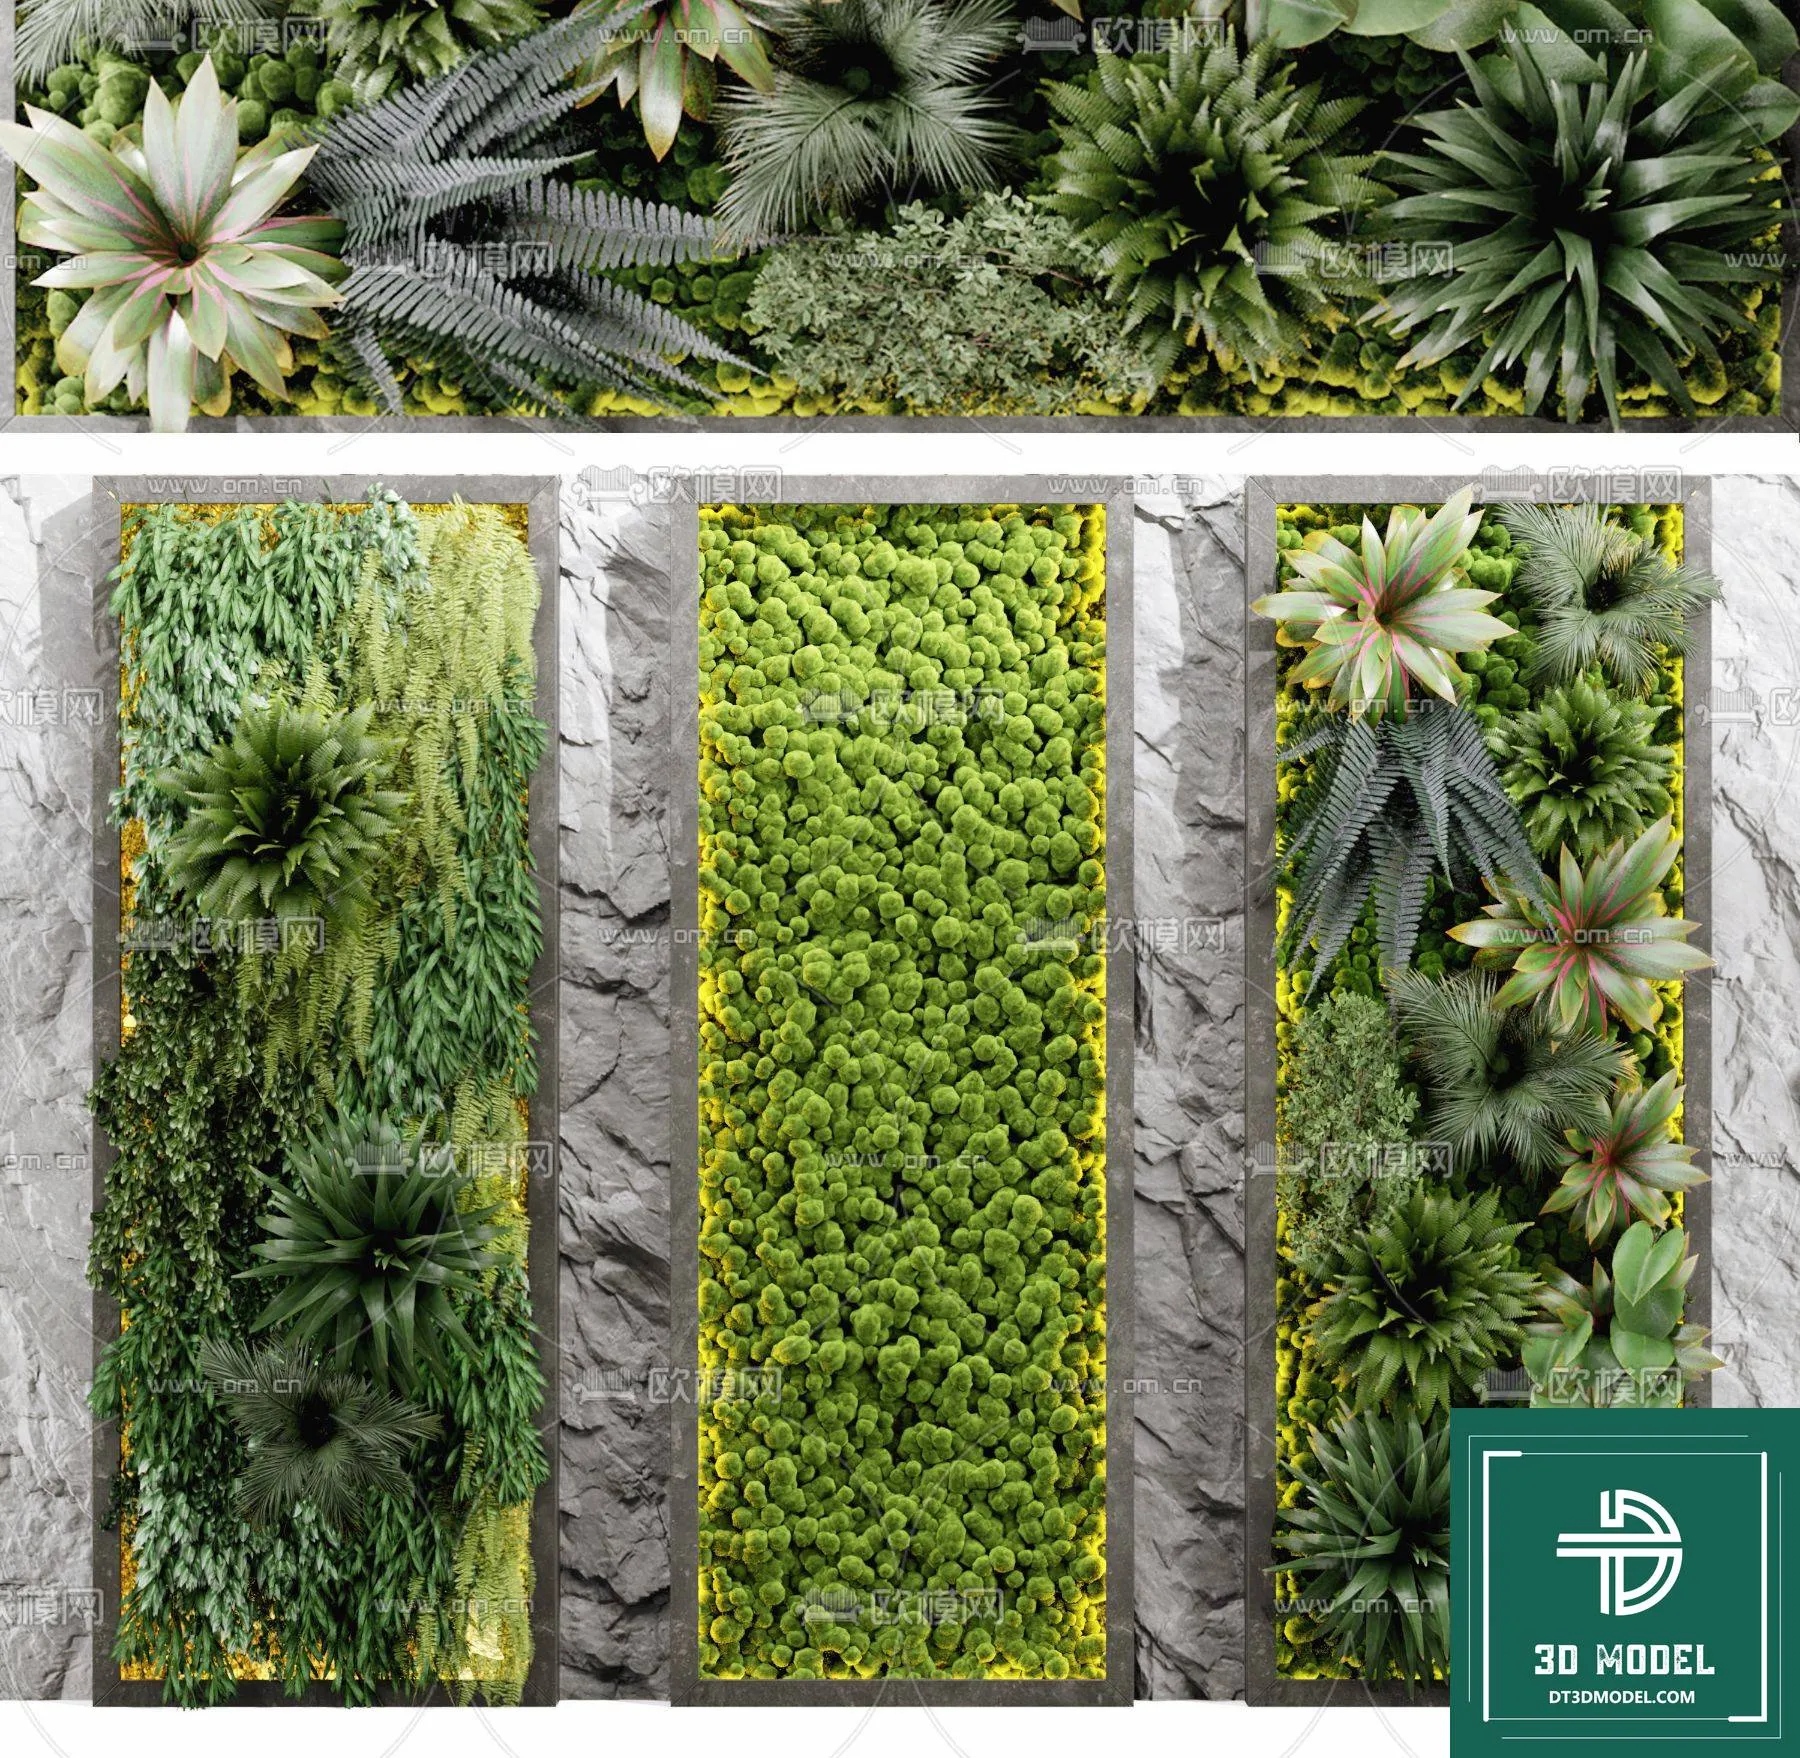 VERTICAL GARDEN – FITOWALL PLANT 3D MODEL – 131